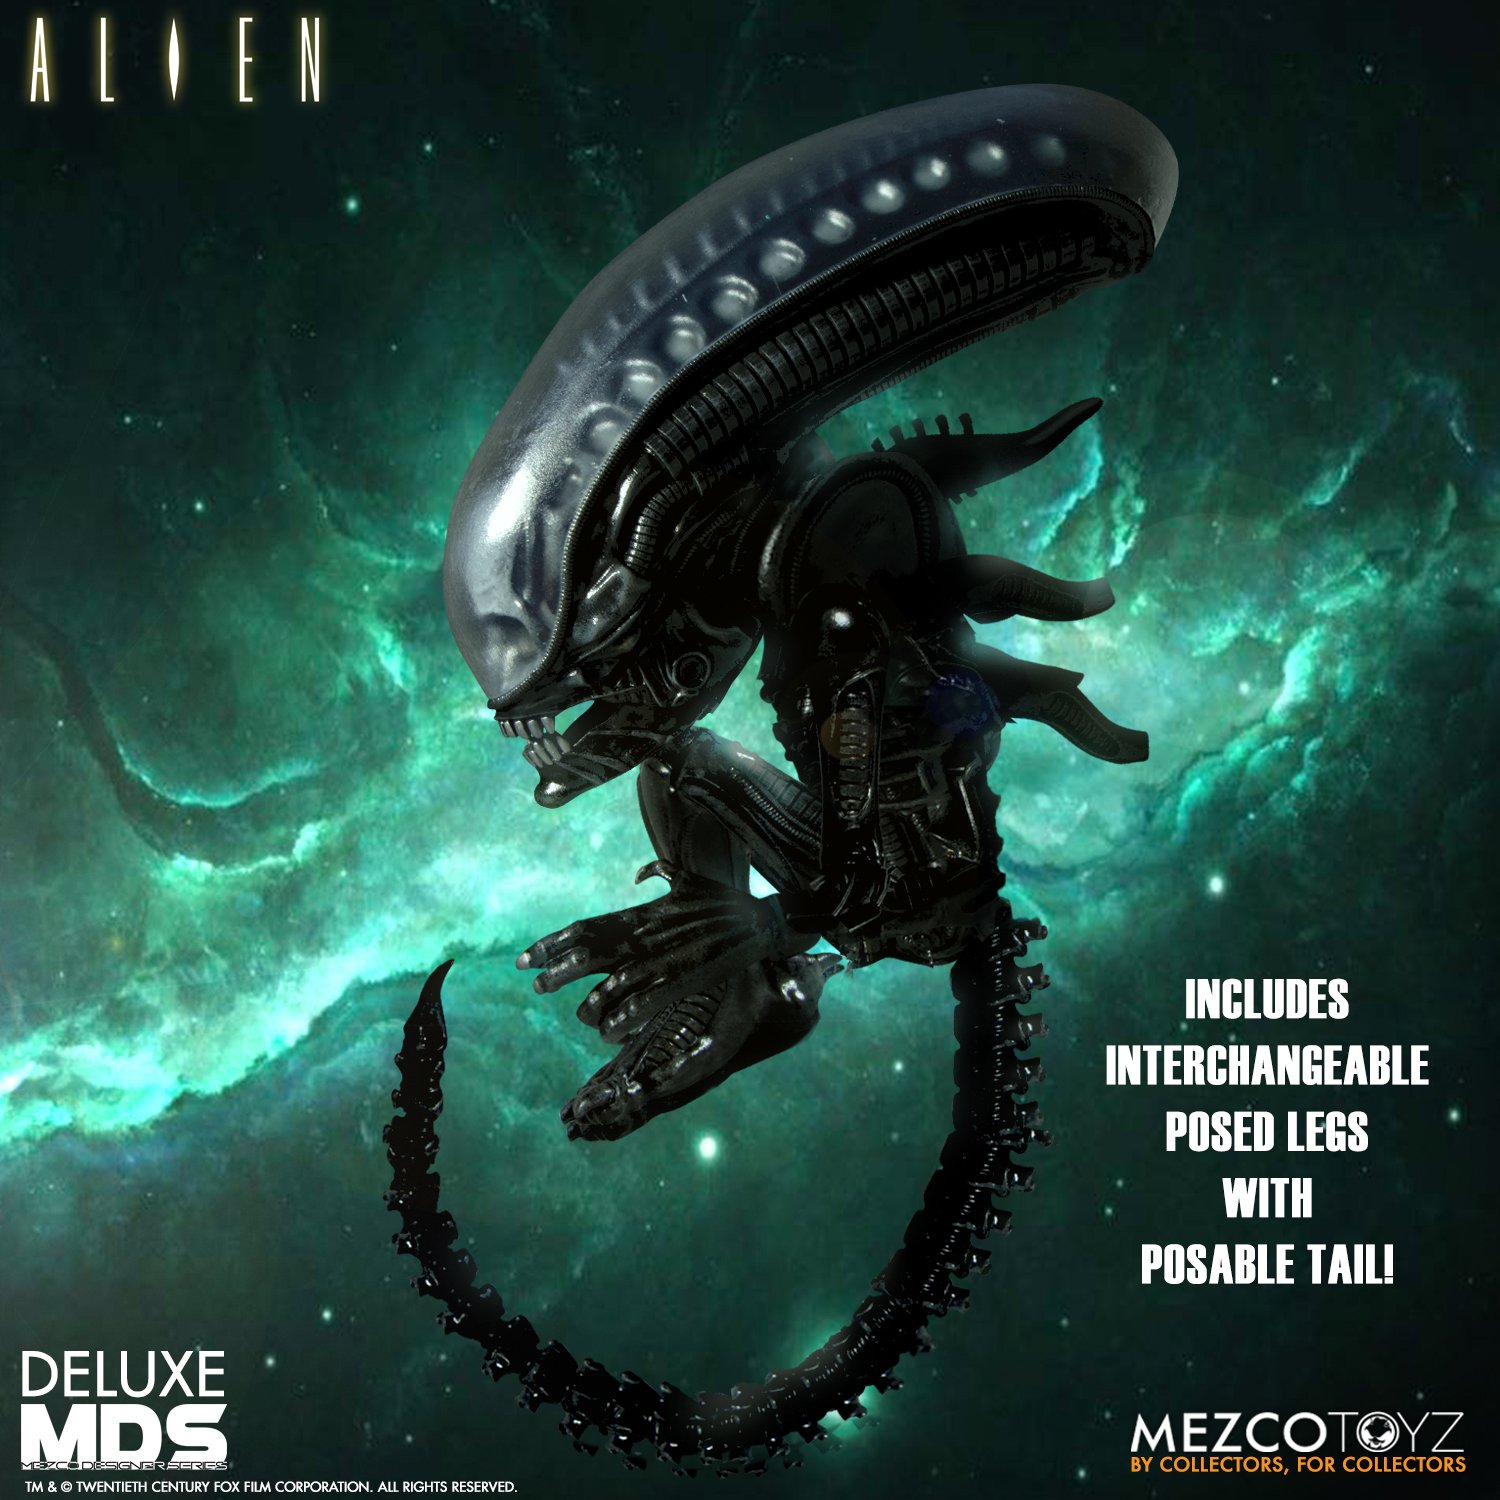 Pre-Order Mezco Alien Deluxe Designer Series Figure